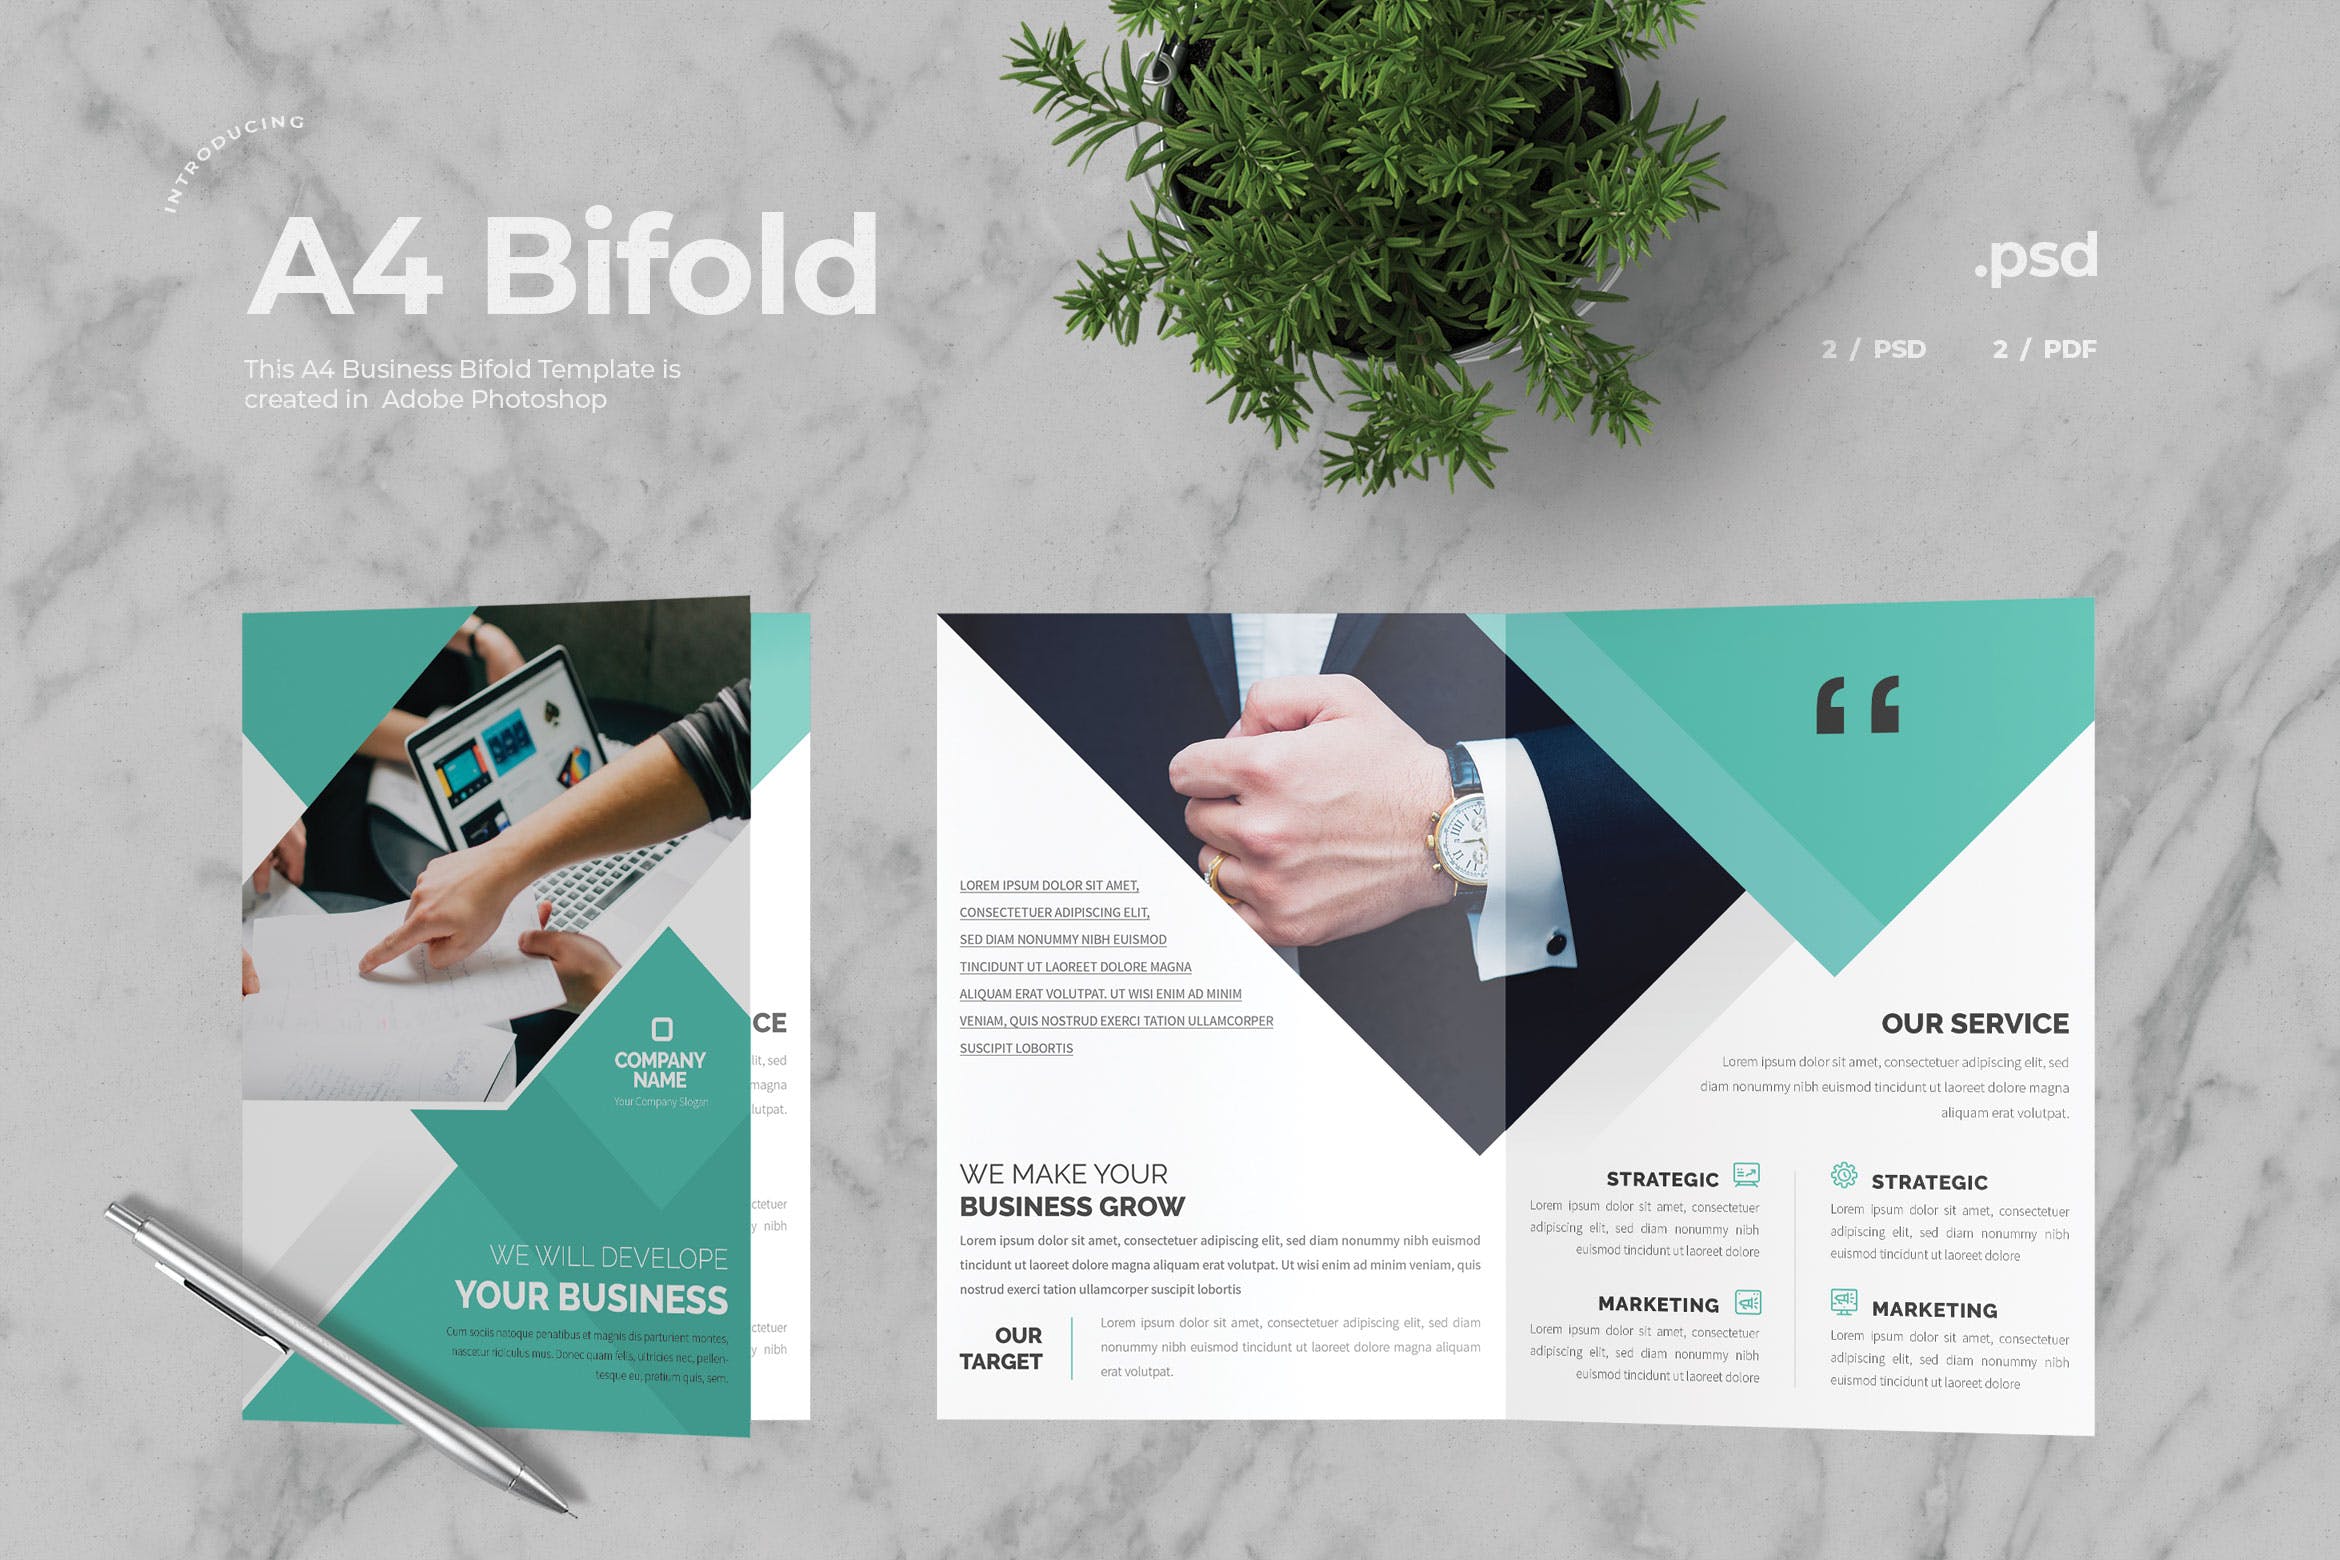 市场调研公司介绍对折页宣传册设计模板v4 Business Bifold Brochure插图